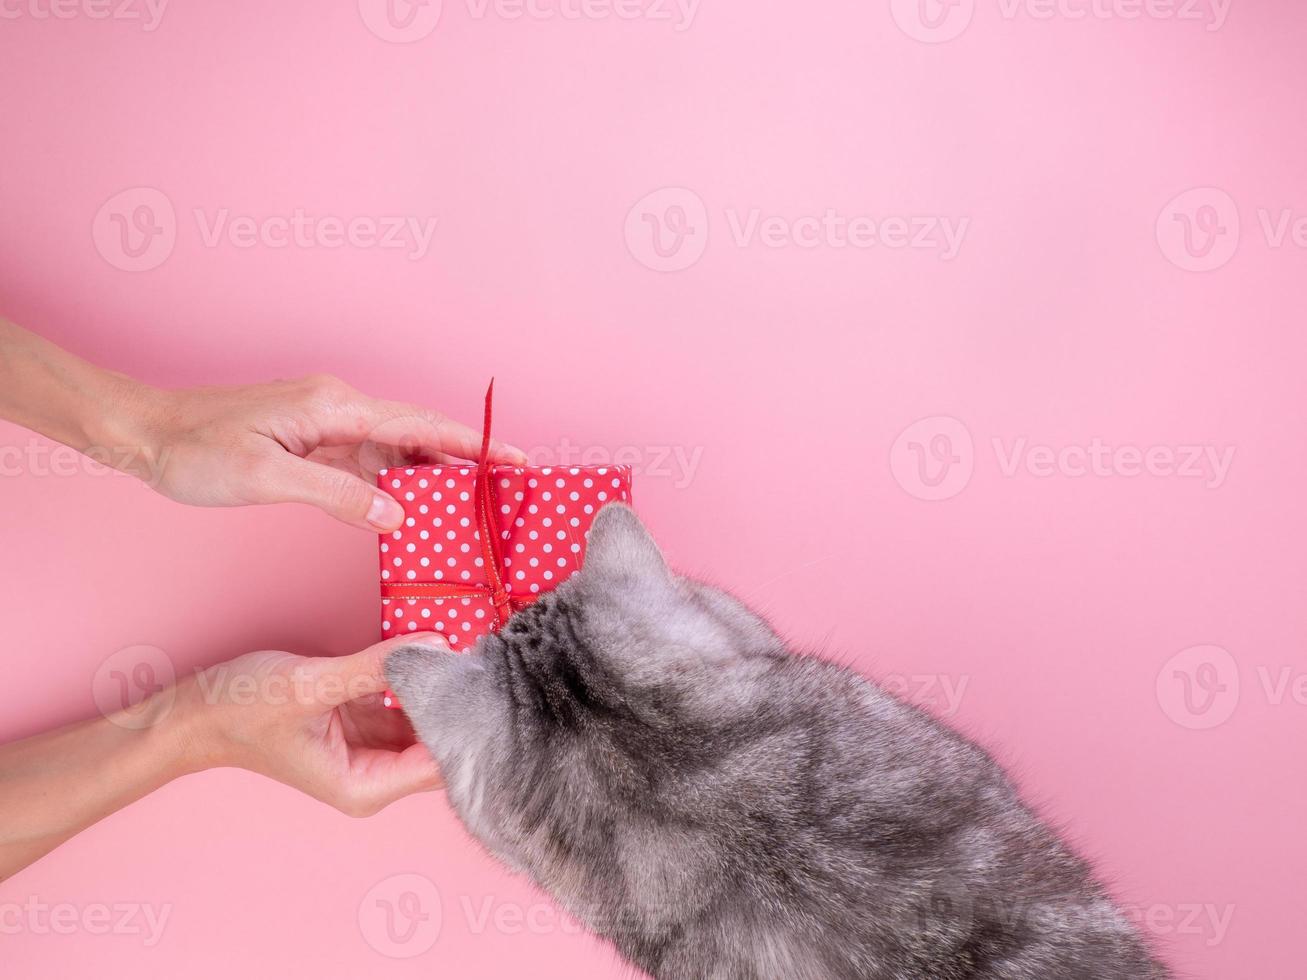 mujer sosteniendo un regalo en una caja de regalo roja con arco y dándoselo al gato, fondo rosa, vista superior foto